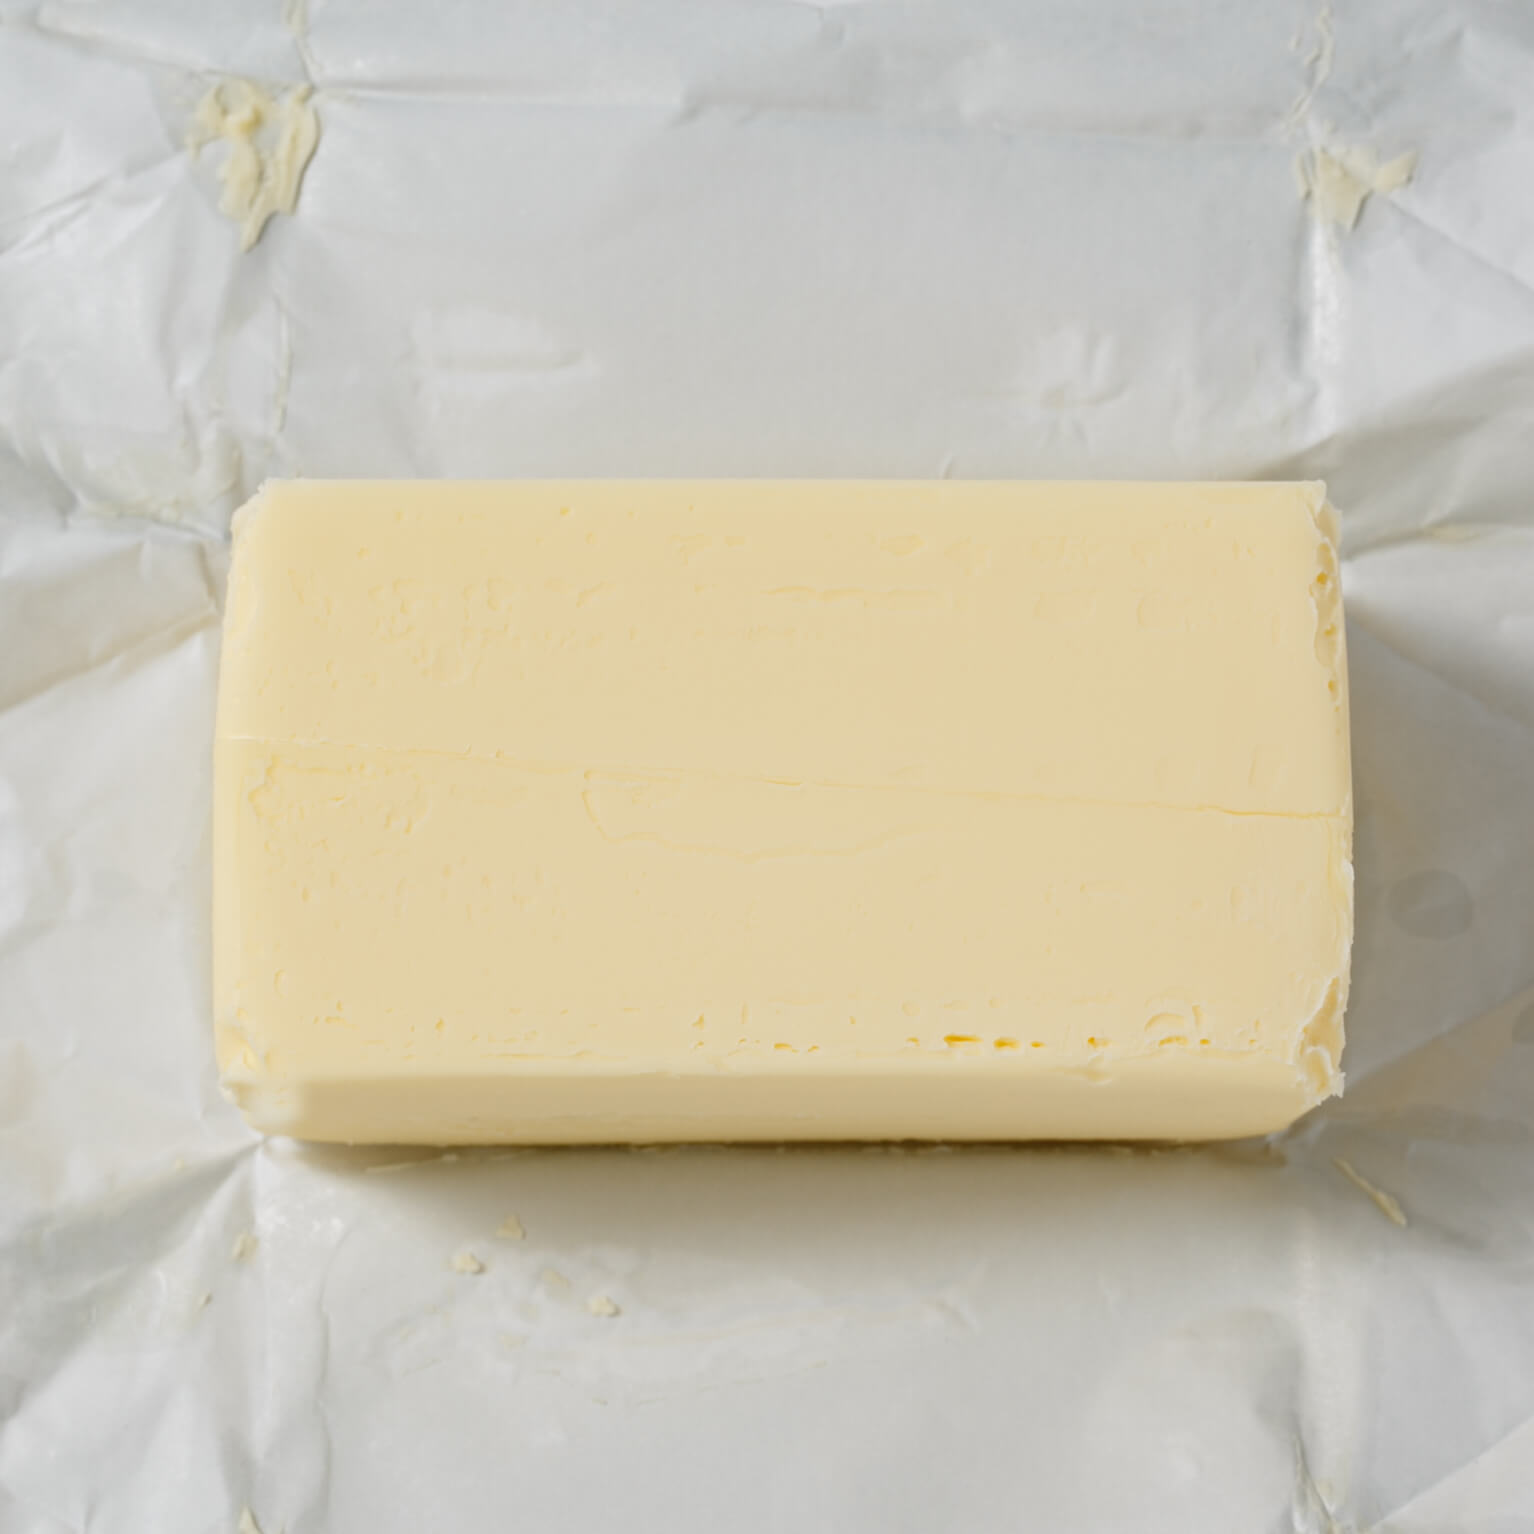 発酵バター 450